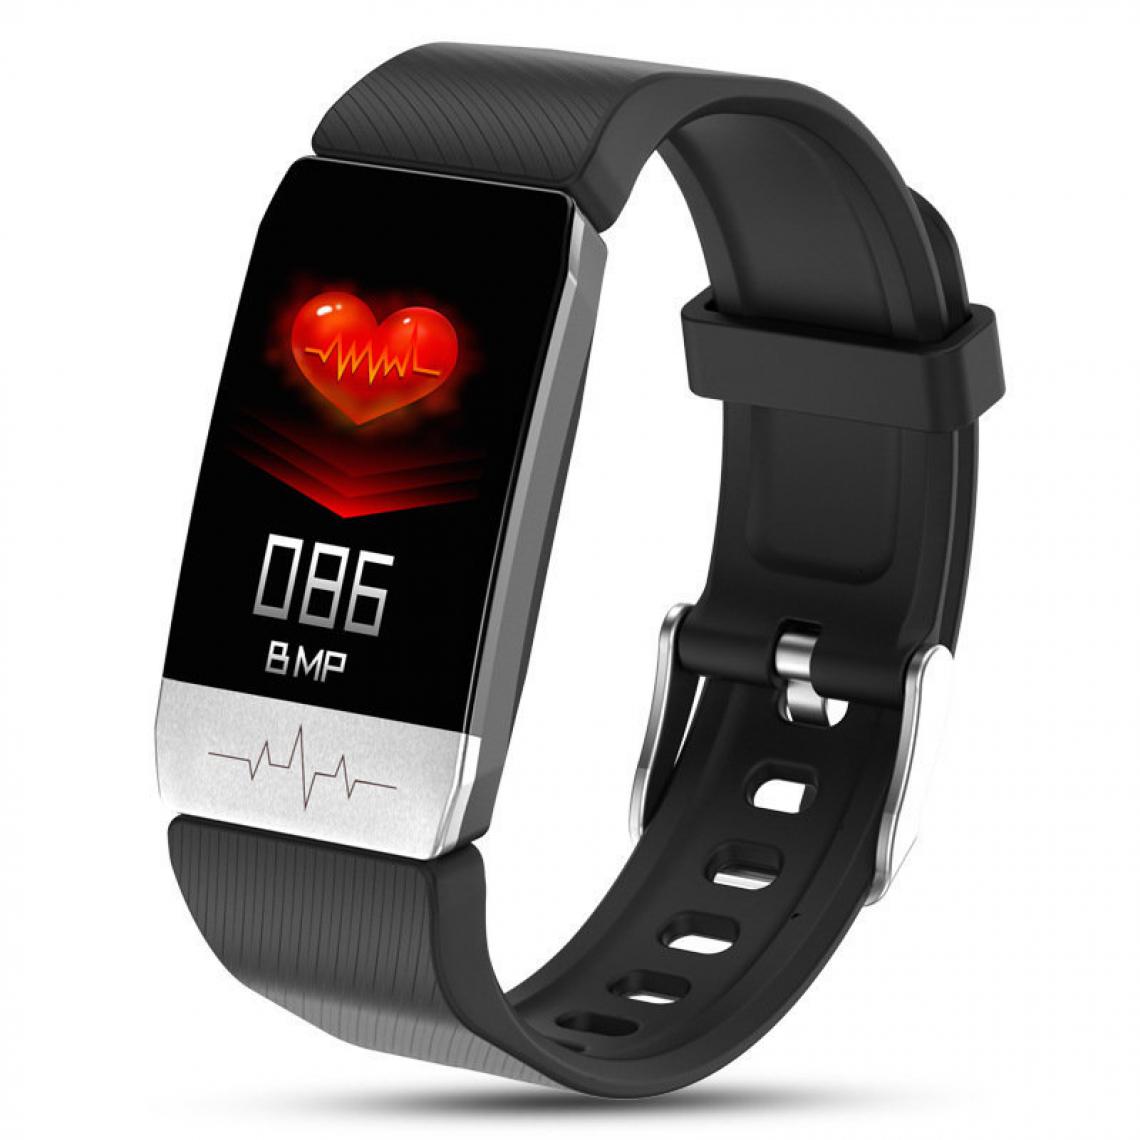 Chrono - Montre Connectée Femmes Homme Smartwatch Fitness Tracker d'Activité avec Cardiofréquencemètres Moniteur de Sommeil,Réveil,Notifications,Bluetooth Podomètre Étanche IP67 pour iOS Android-Noir - Montre connectée